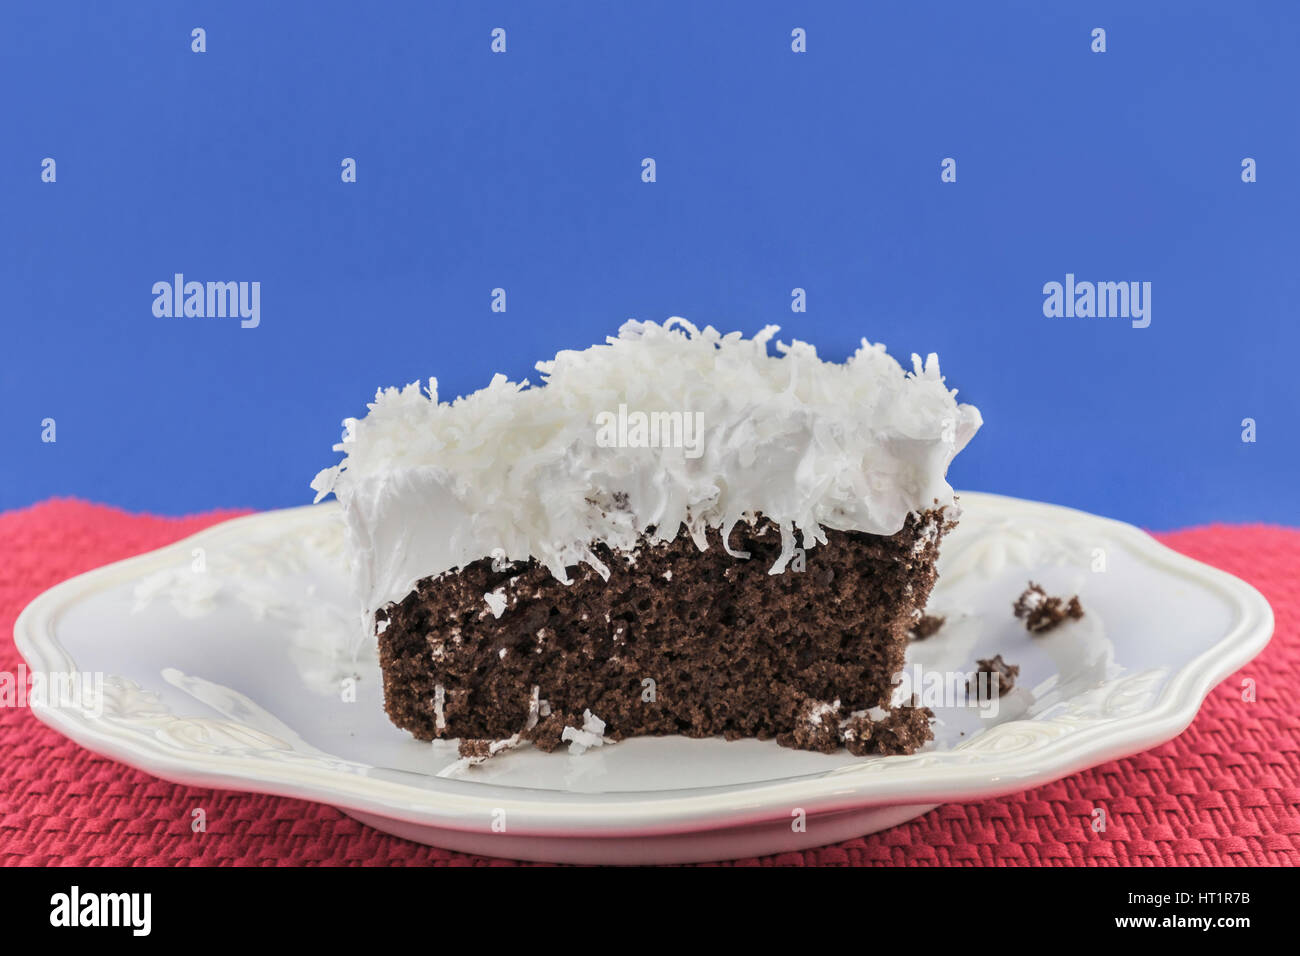 Ein Stück Schokoladenkuchen mit flauschigen weißen Zuckerguss garniert mit Kokosraspeln auf einem weißen Teller. Oklahoma, USA. Stockfoto